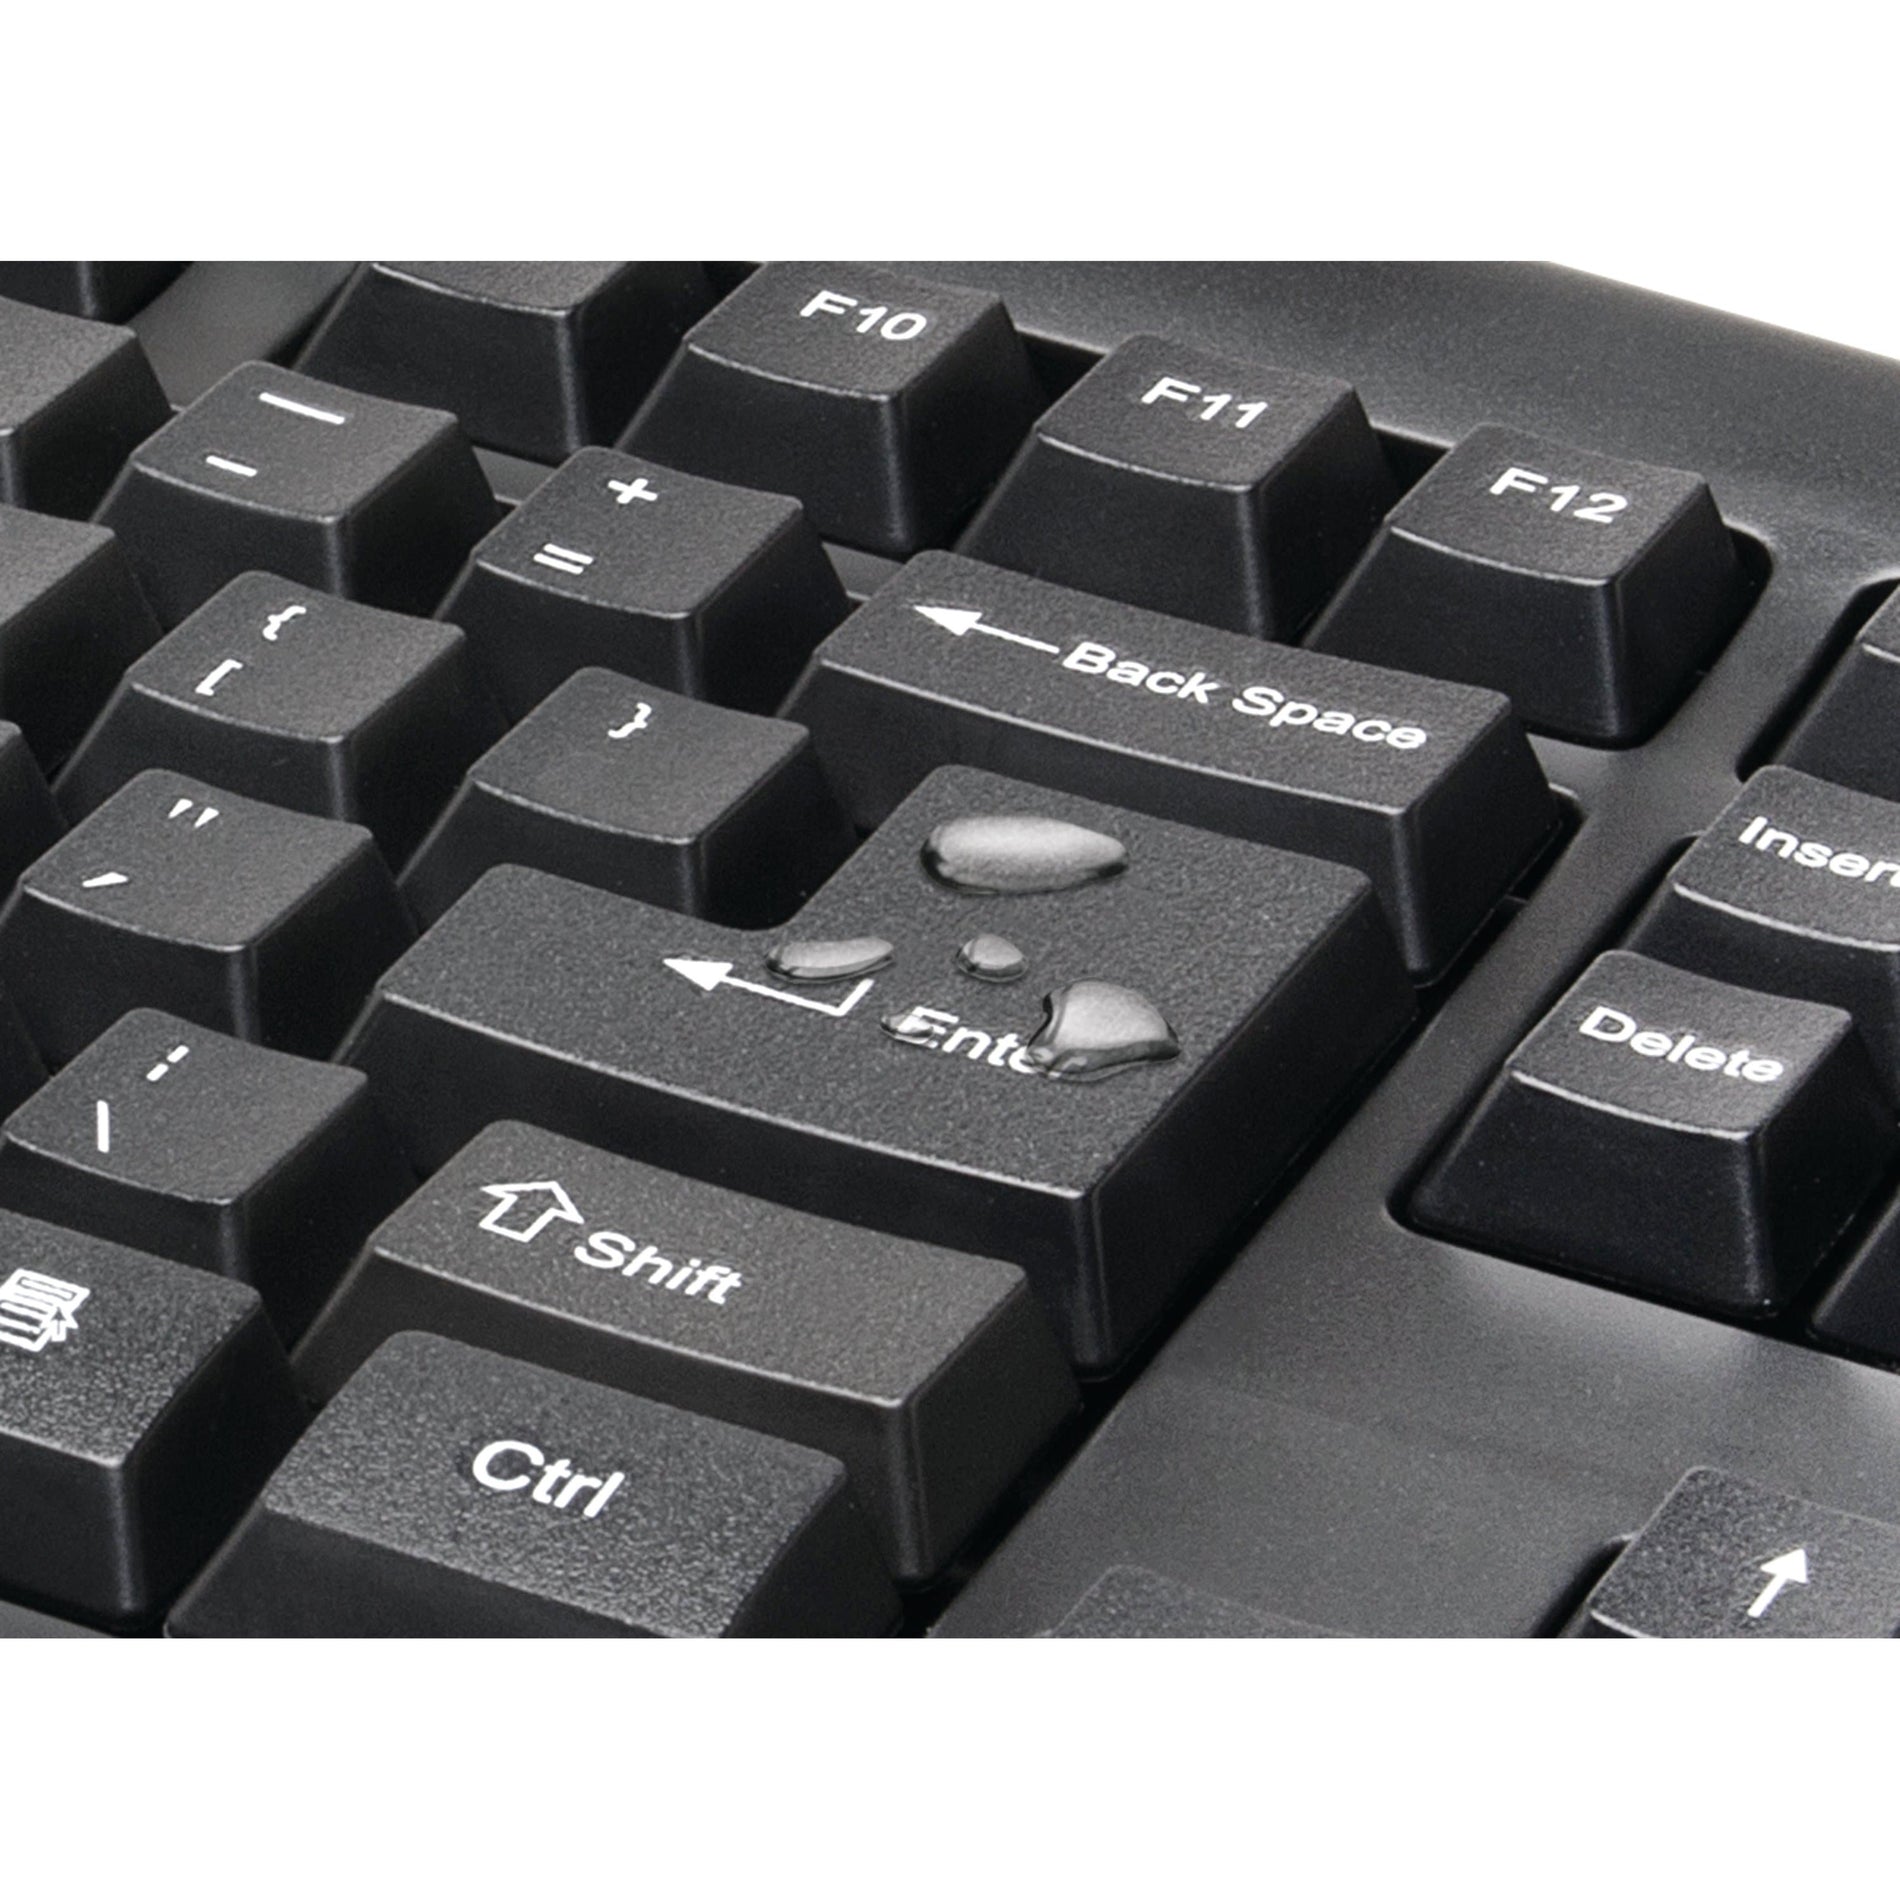 Kensington K75231US Keyboard for Life Wireless Desktop Set, Spill Proof, Full-size Keyboard, Plug & Play